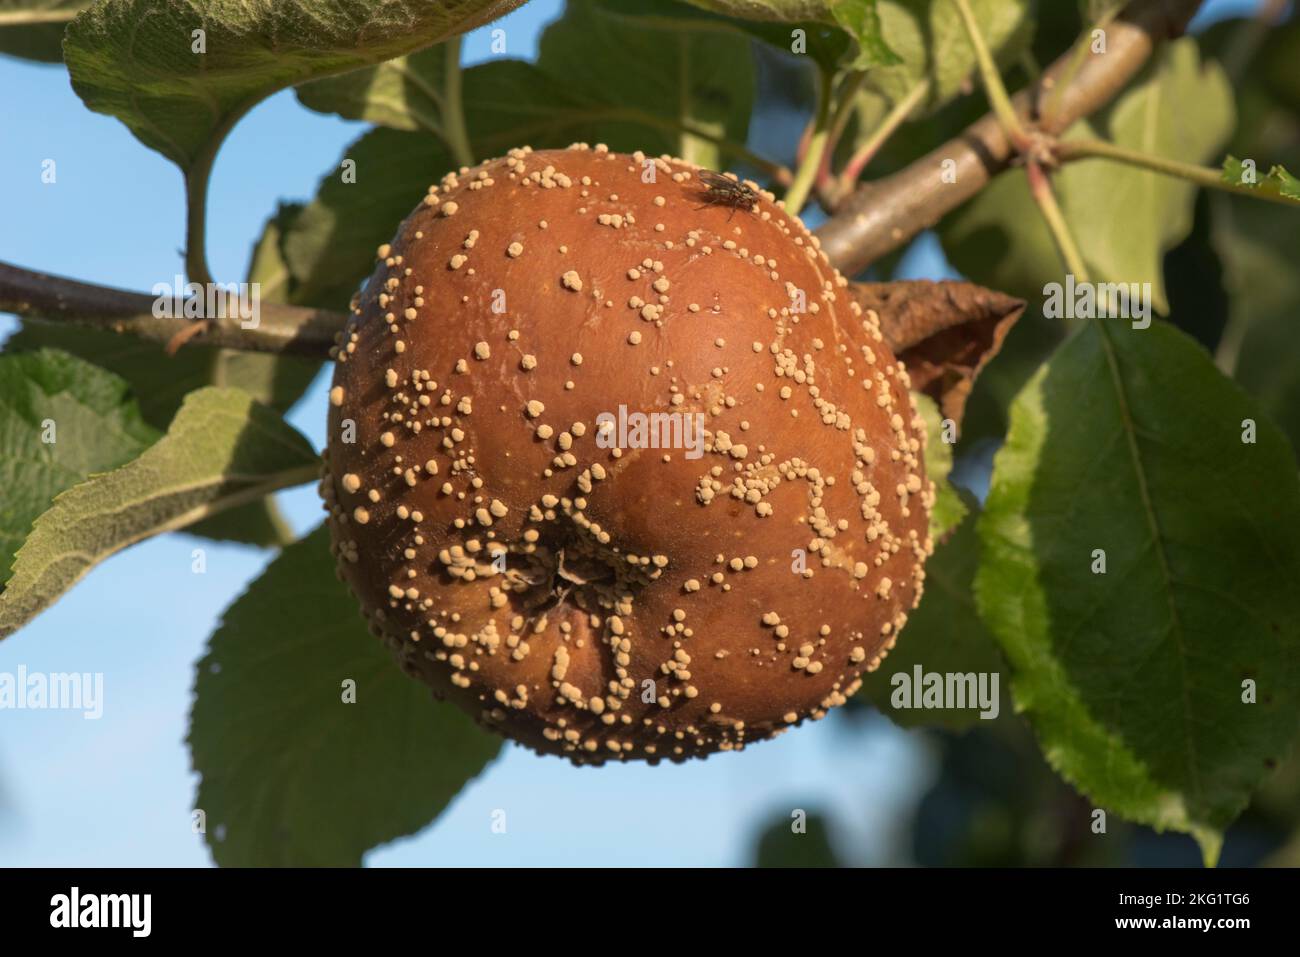 Braune Fäule (Monilinia laxa) verrottet Apfelfrucht mit weiß/cremefarbenen konzentrischen Pusteln auf einem Obstgarten-Baum, Bukshire, August Stockfoto